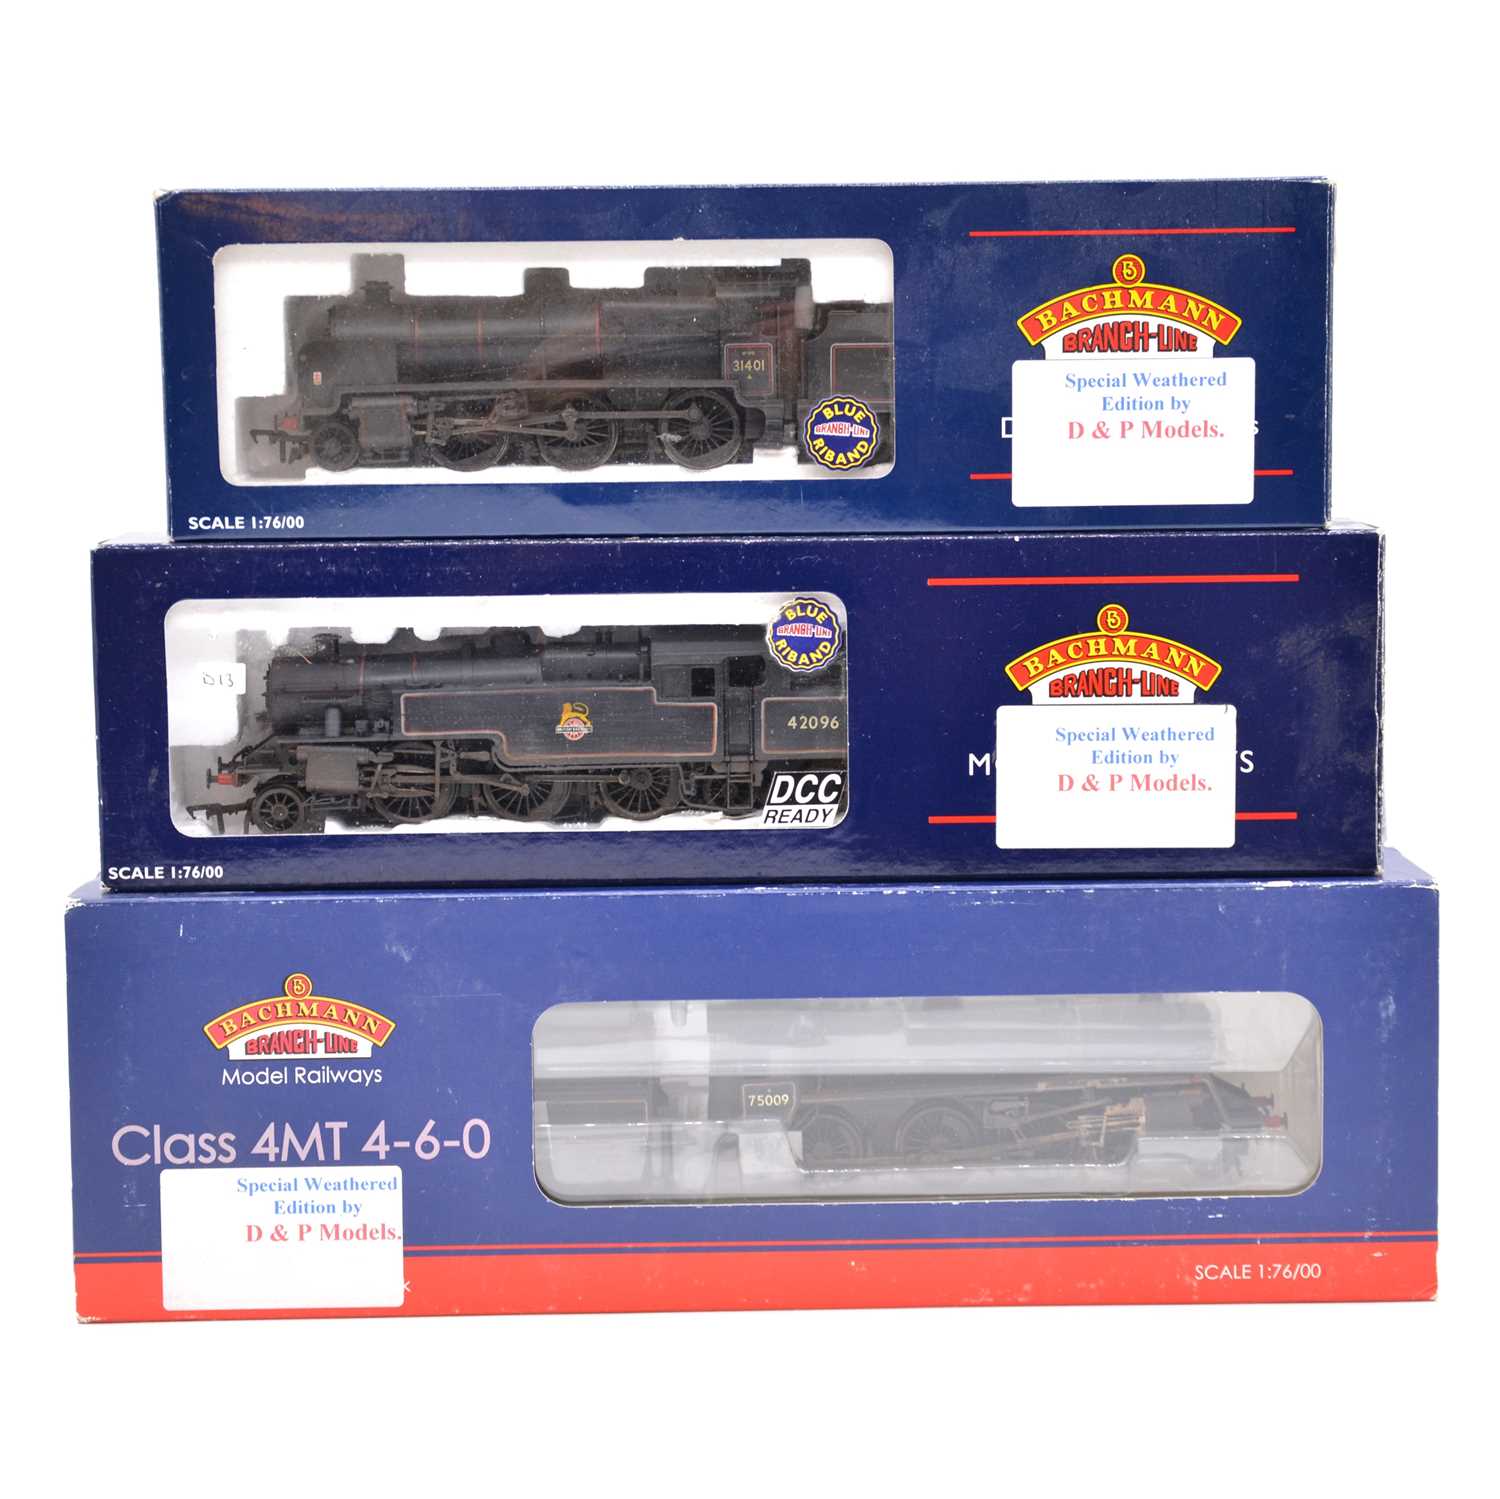 Lot 221 - Three Bachmann OO gauge model railway steam locomotives with tenders